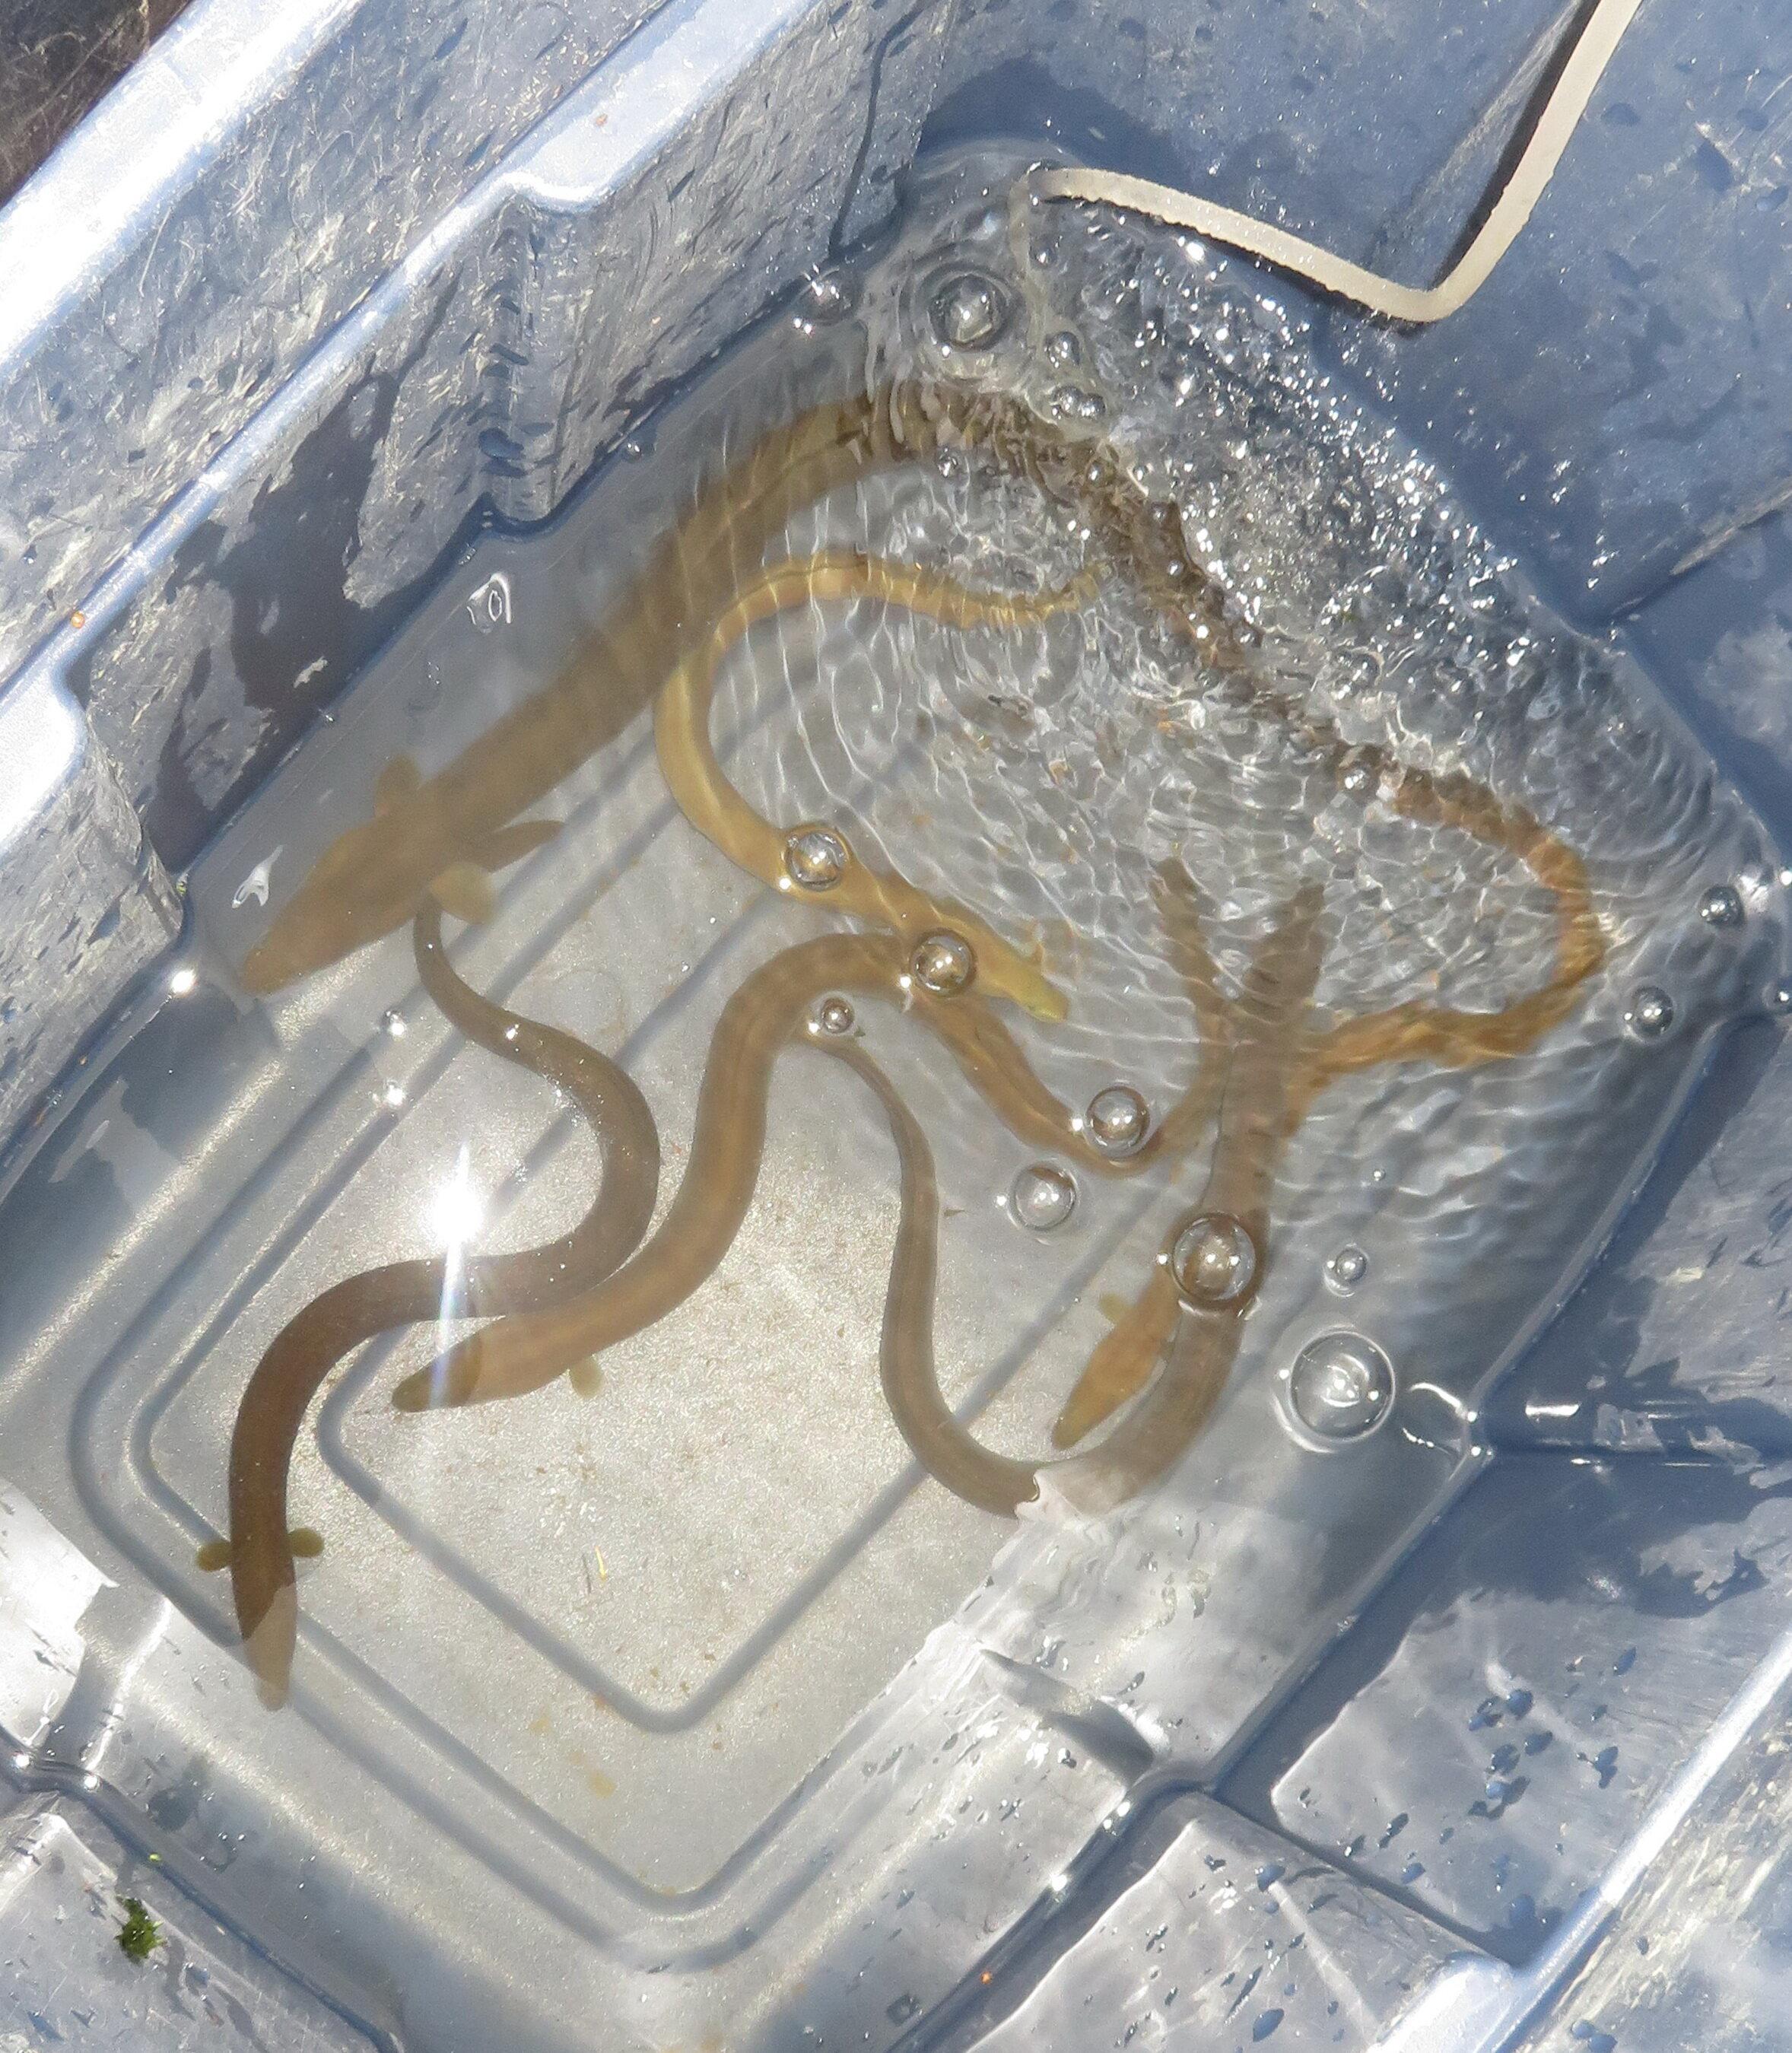 American eels in a bin of water